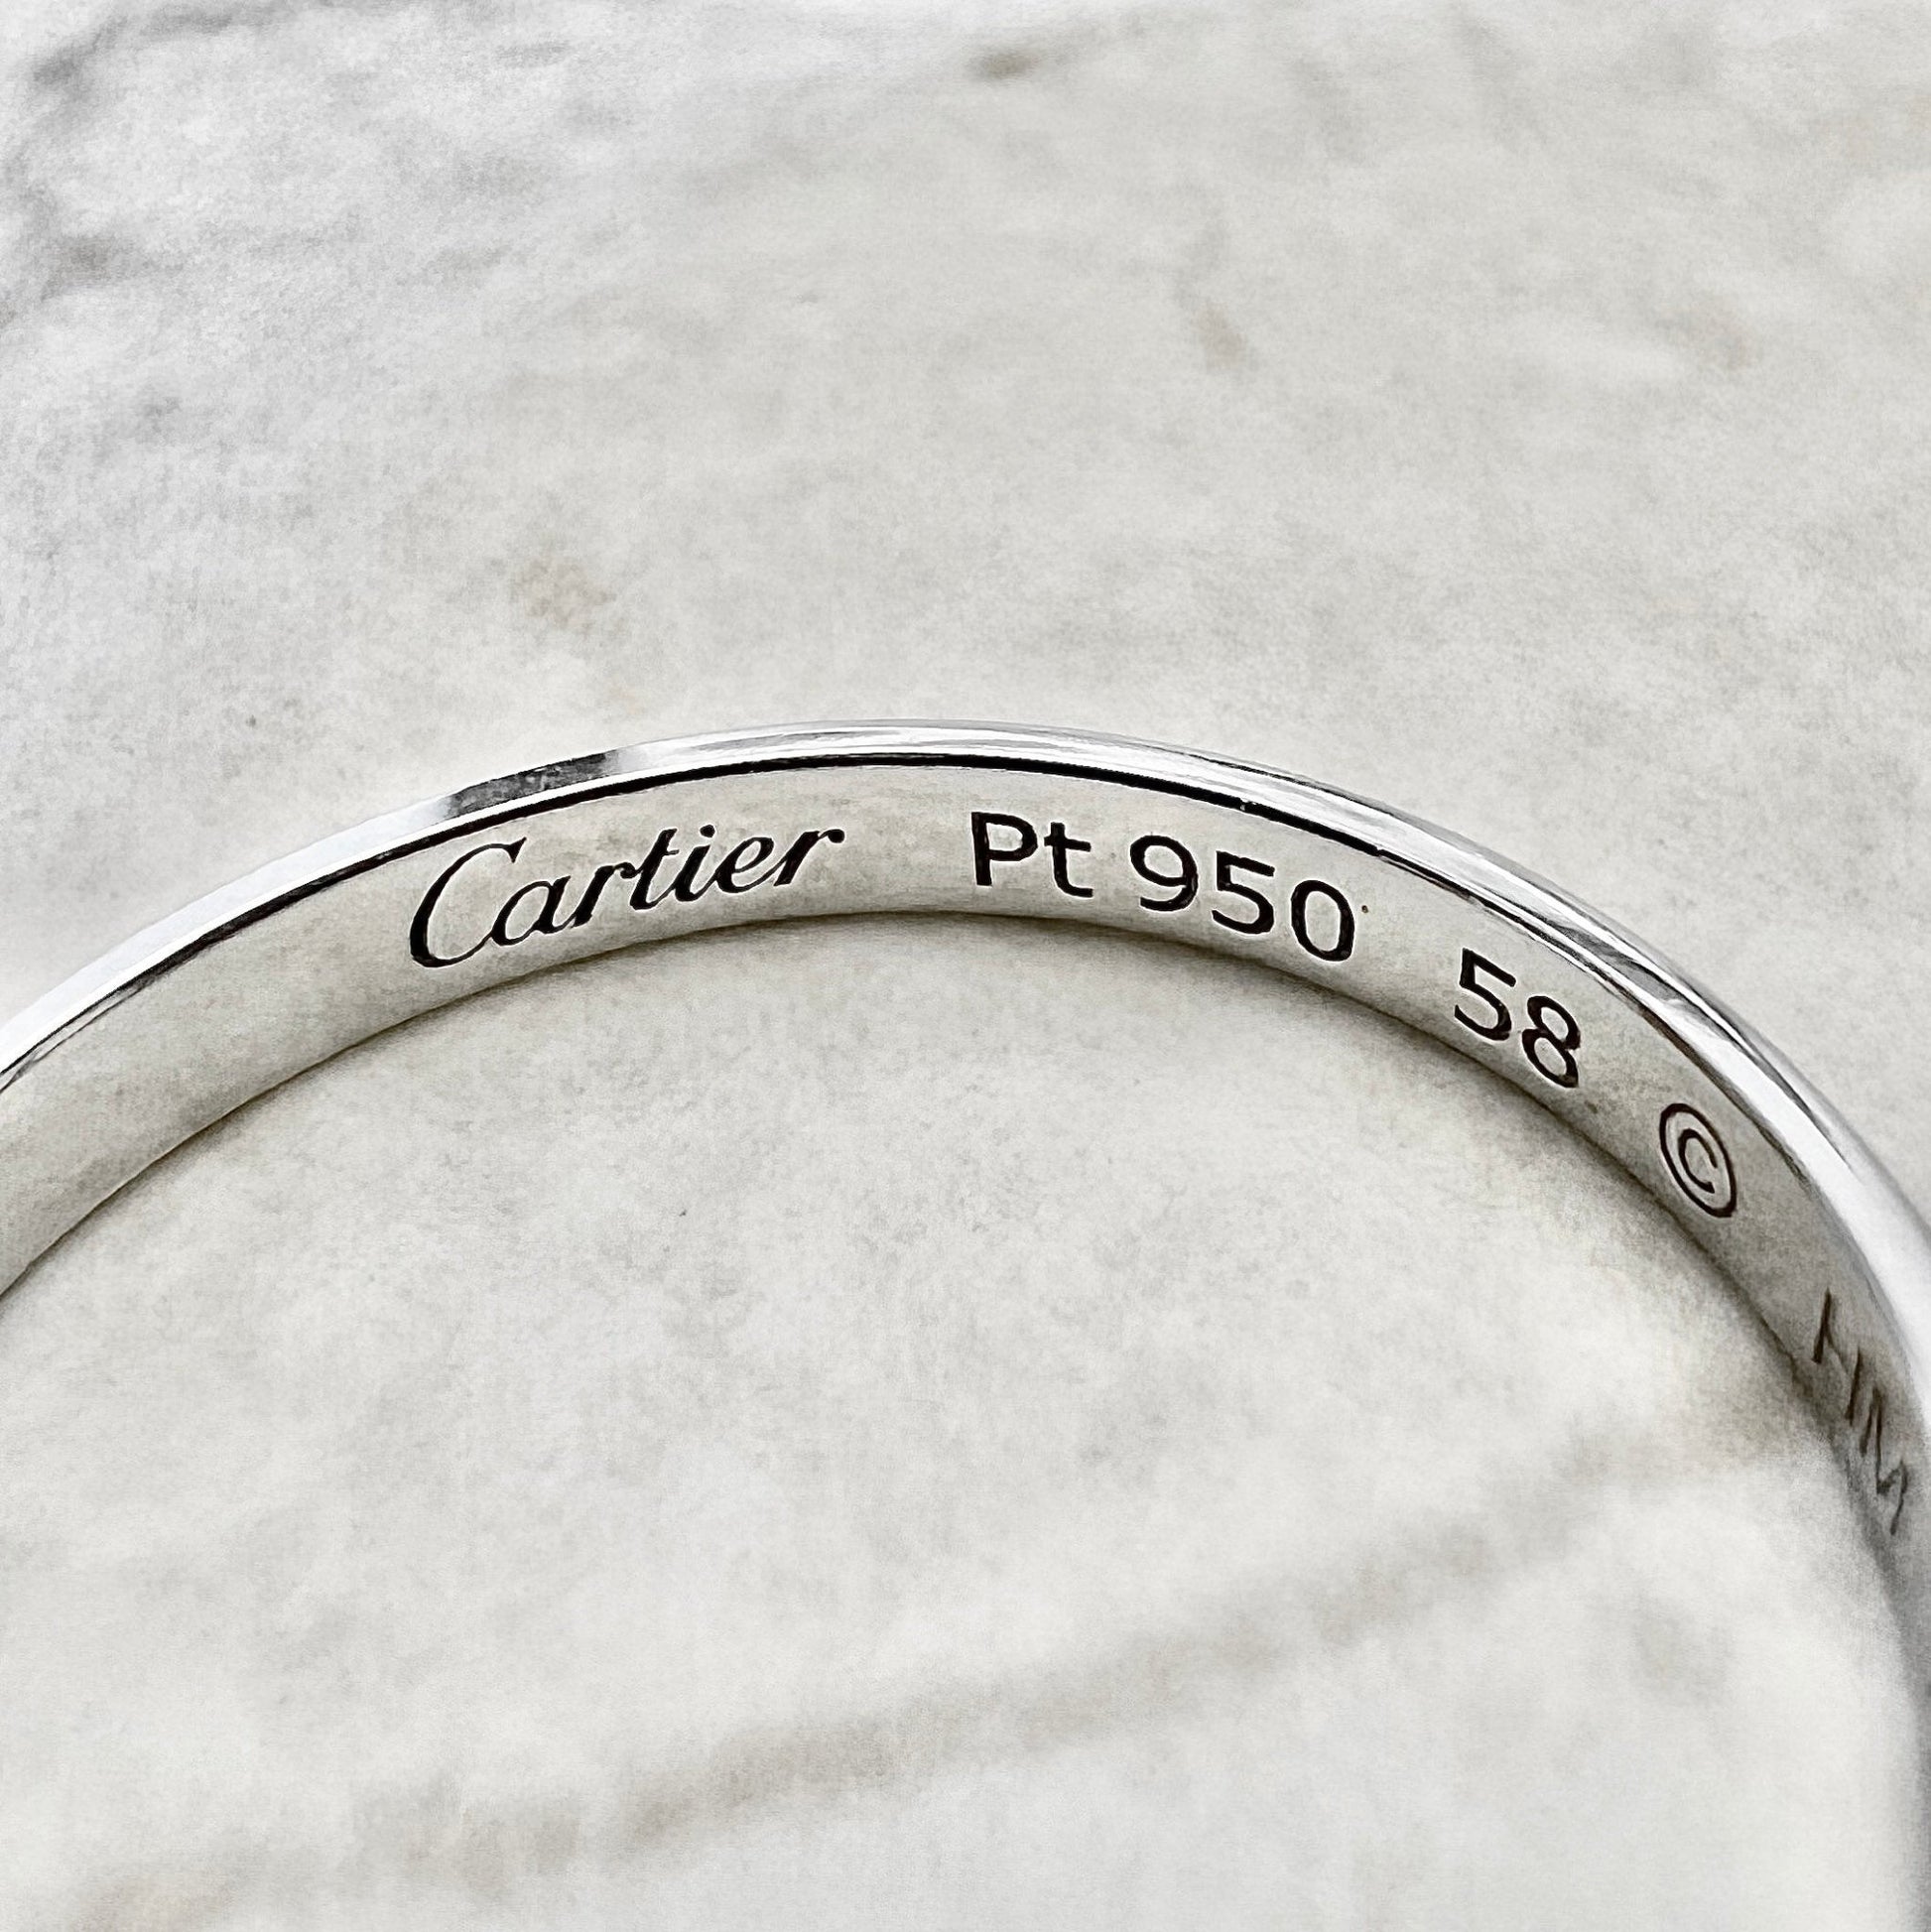 Cartier 1895 Wedding Band 2.5 mm - Platinum Cartier Band Ring - Cartier Wedding Ring - Anniversary Ring - Size 8.25 US / 58 FR